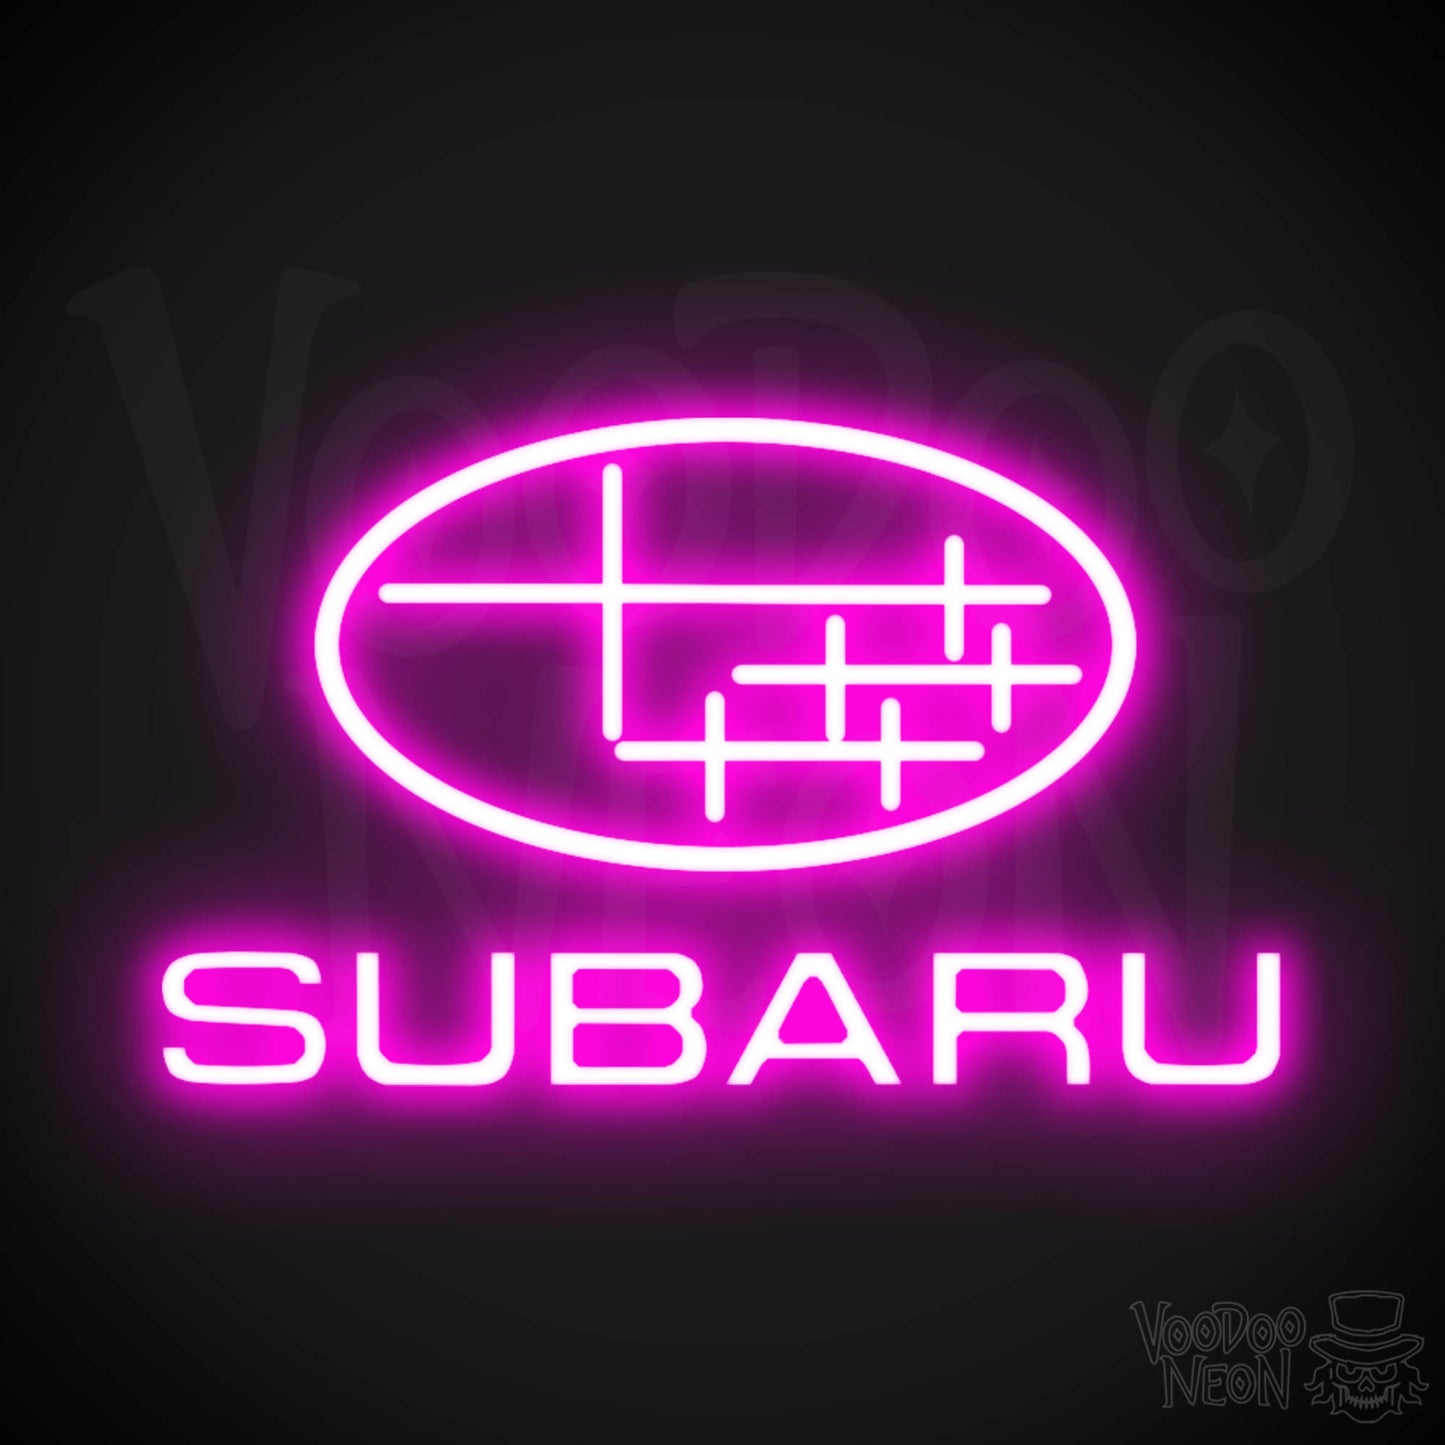 Subaru Neon Sign - Subaru Sign - Subaru Decor - Wall Art - Color Pink